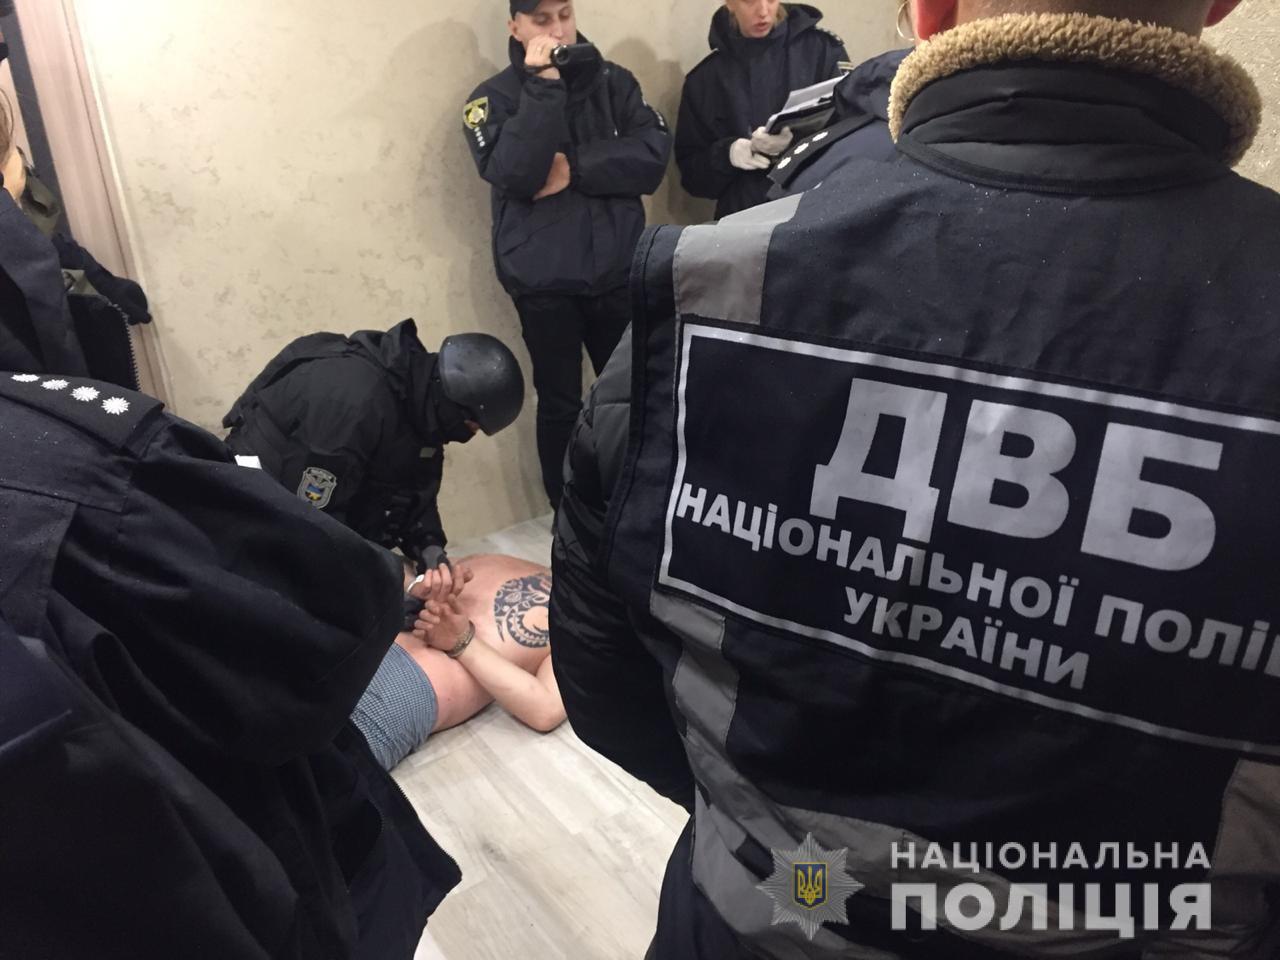  Из мести: под Днепром сожгли машину полицейского – ФОТО - фото 1